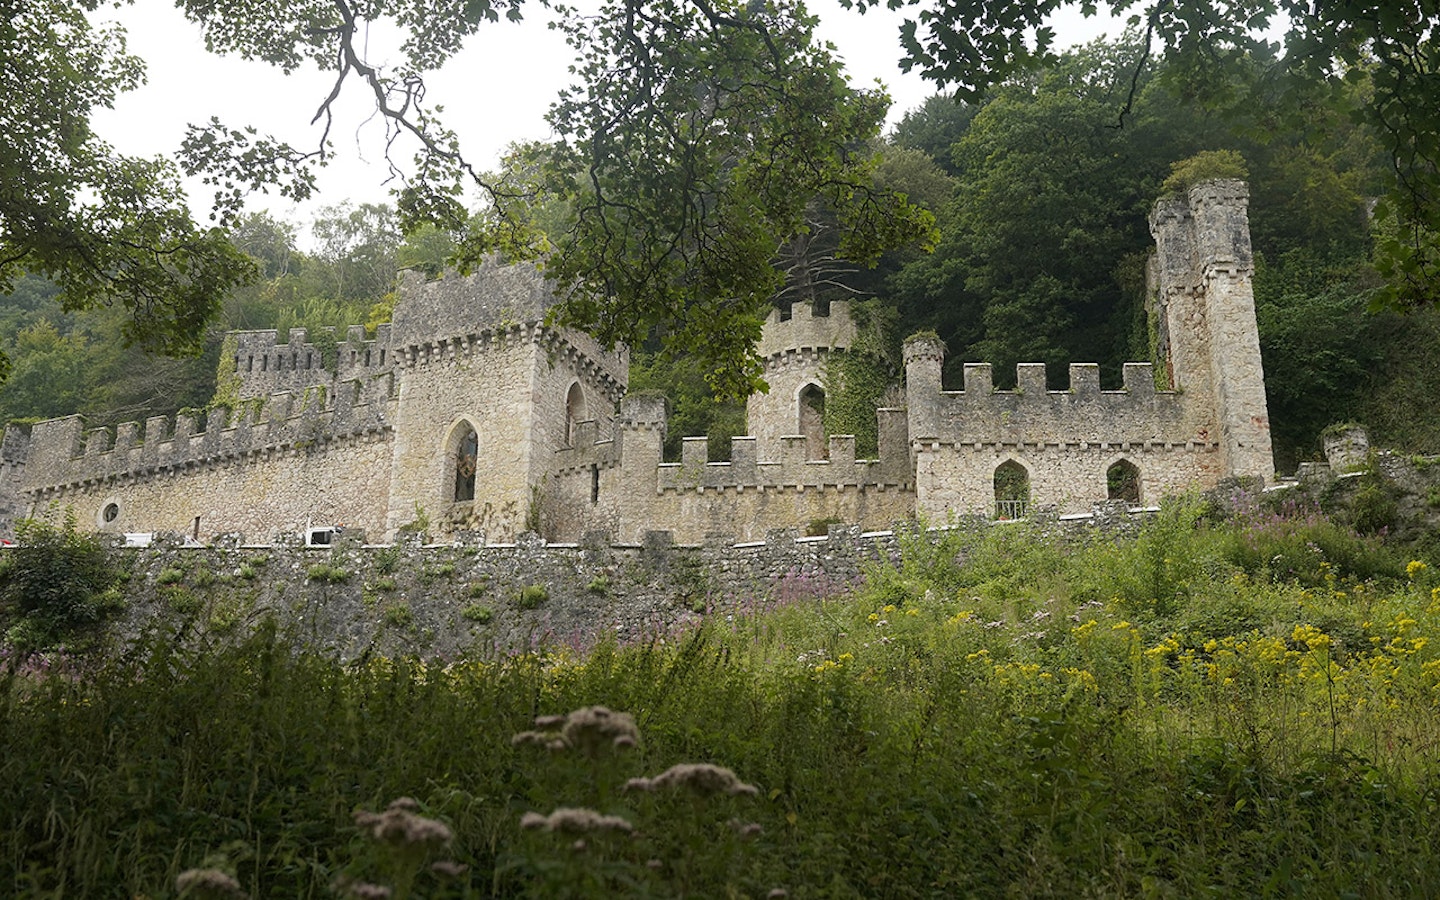 Gwyrch Castle